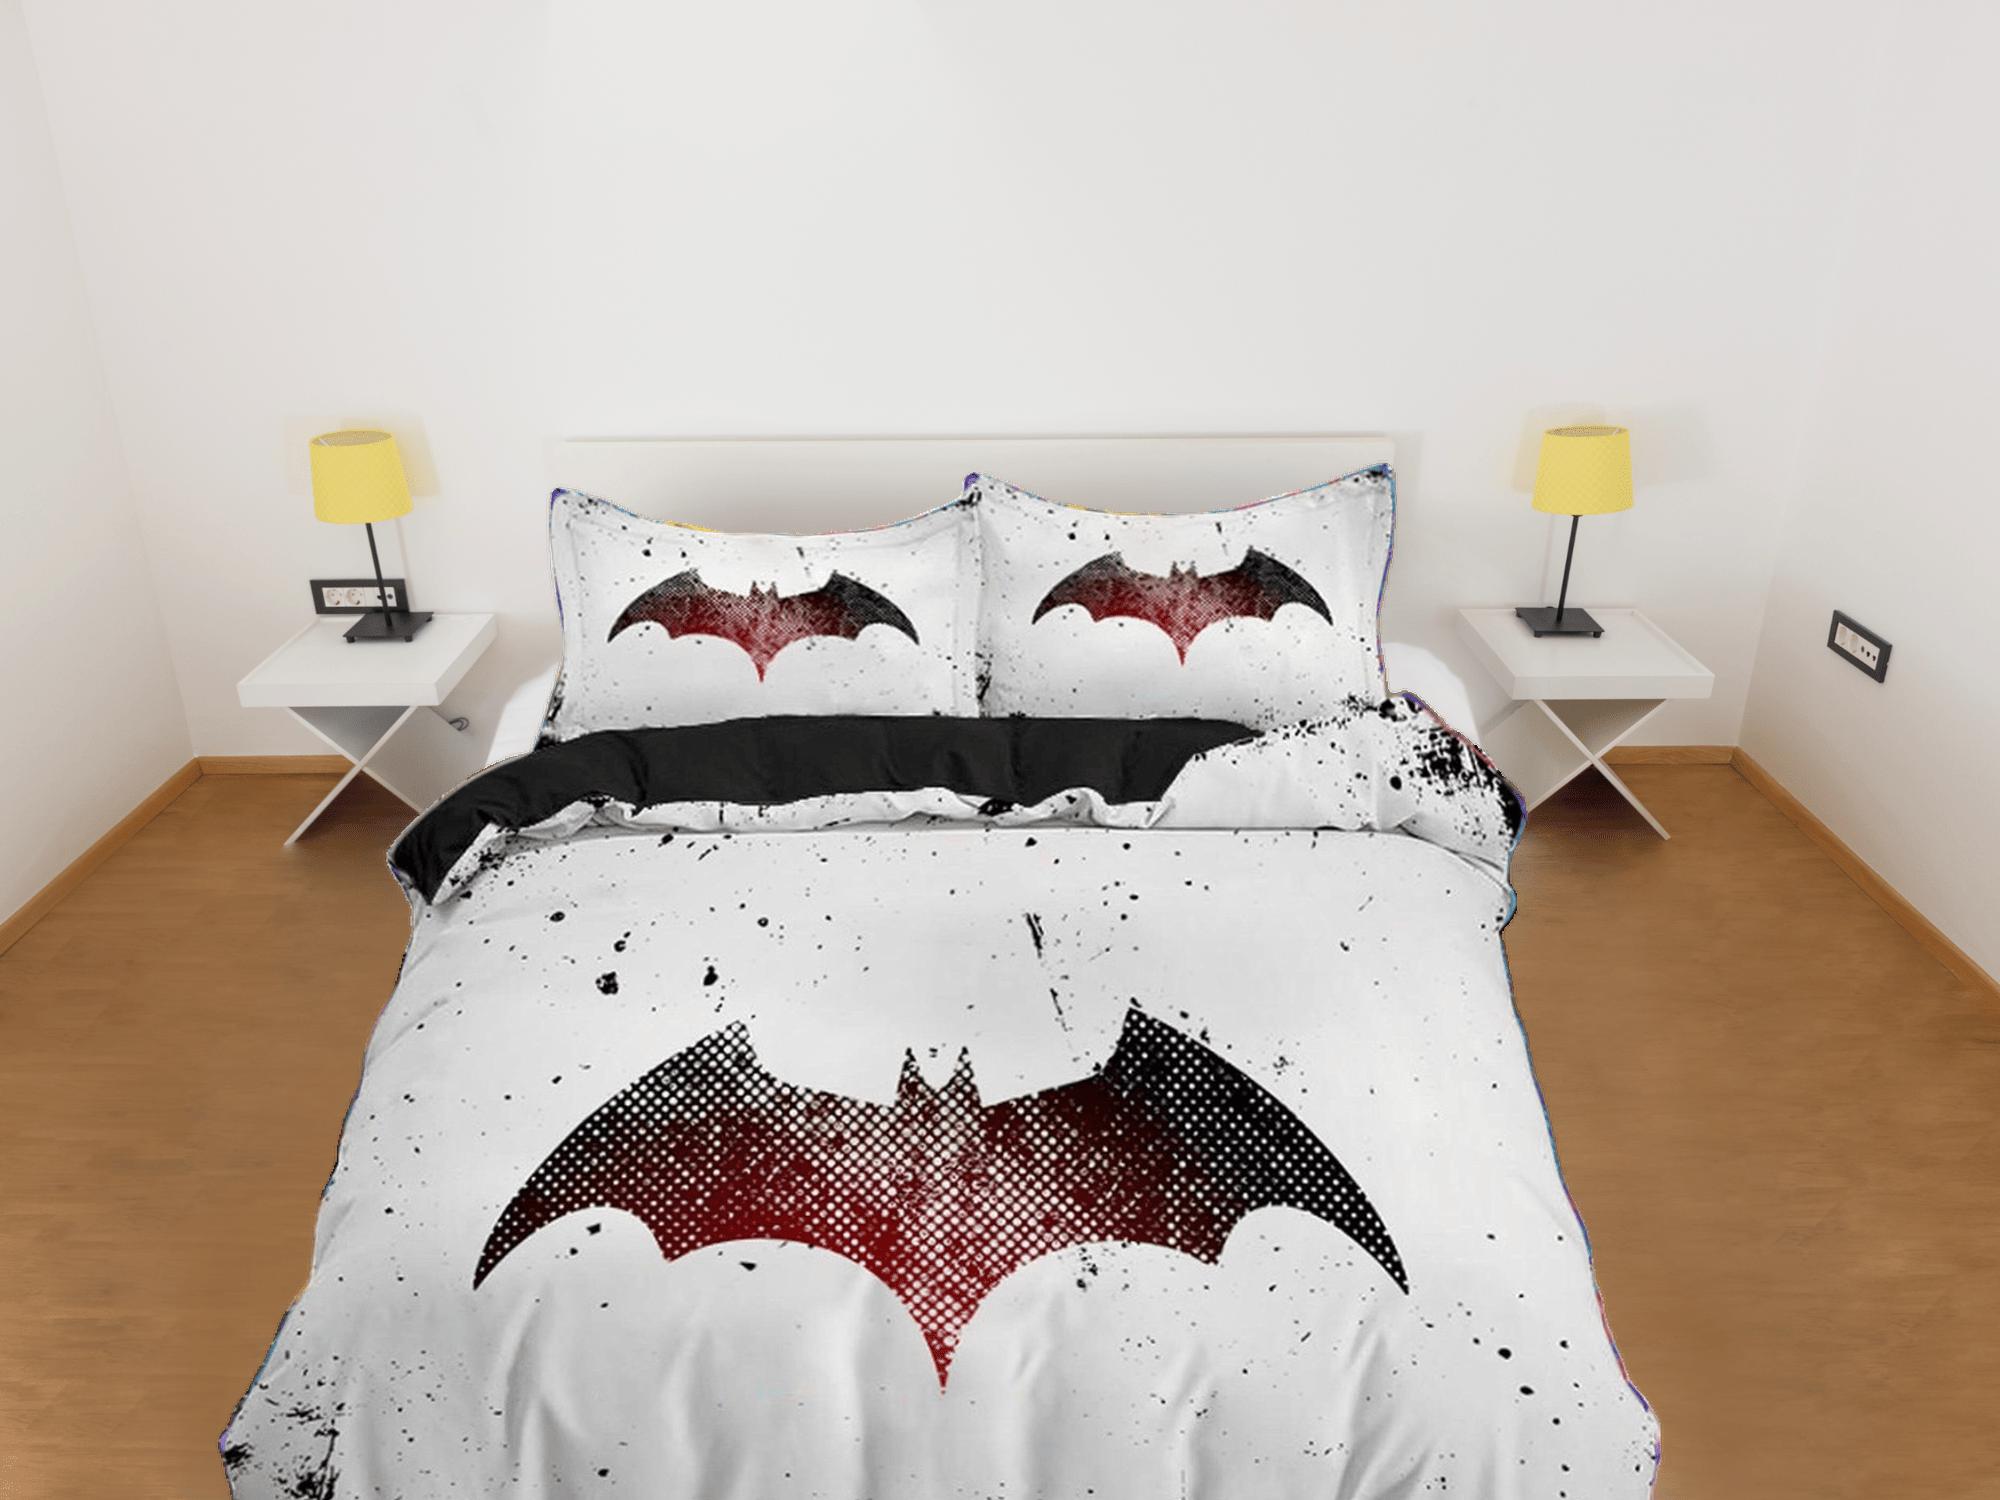 daintyduvet Bat silhouette halloween bedding & pillowcase, black and white duvet cover set dorm bedding, halloween decor, nursery toddler halloween gift